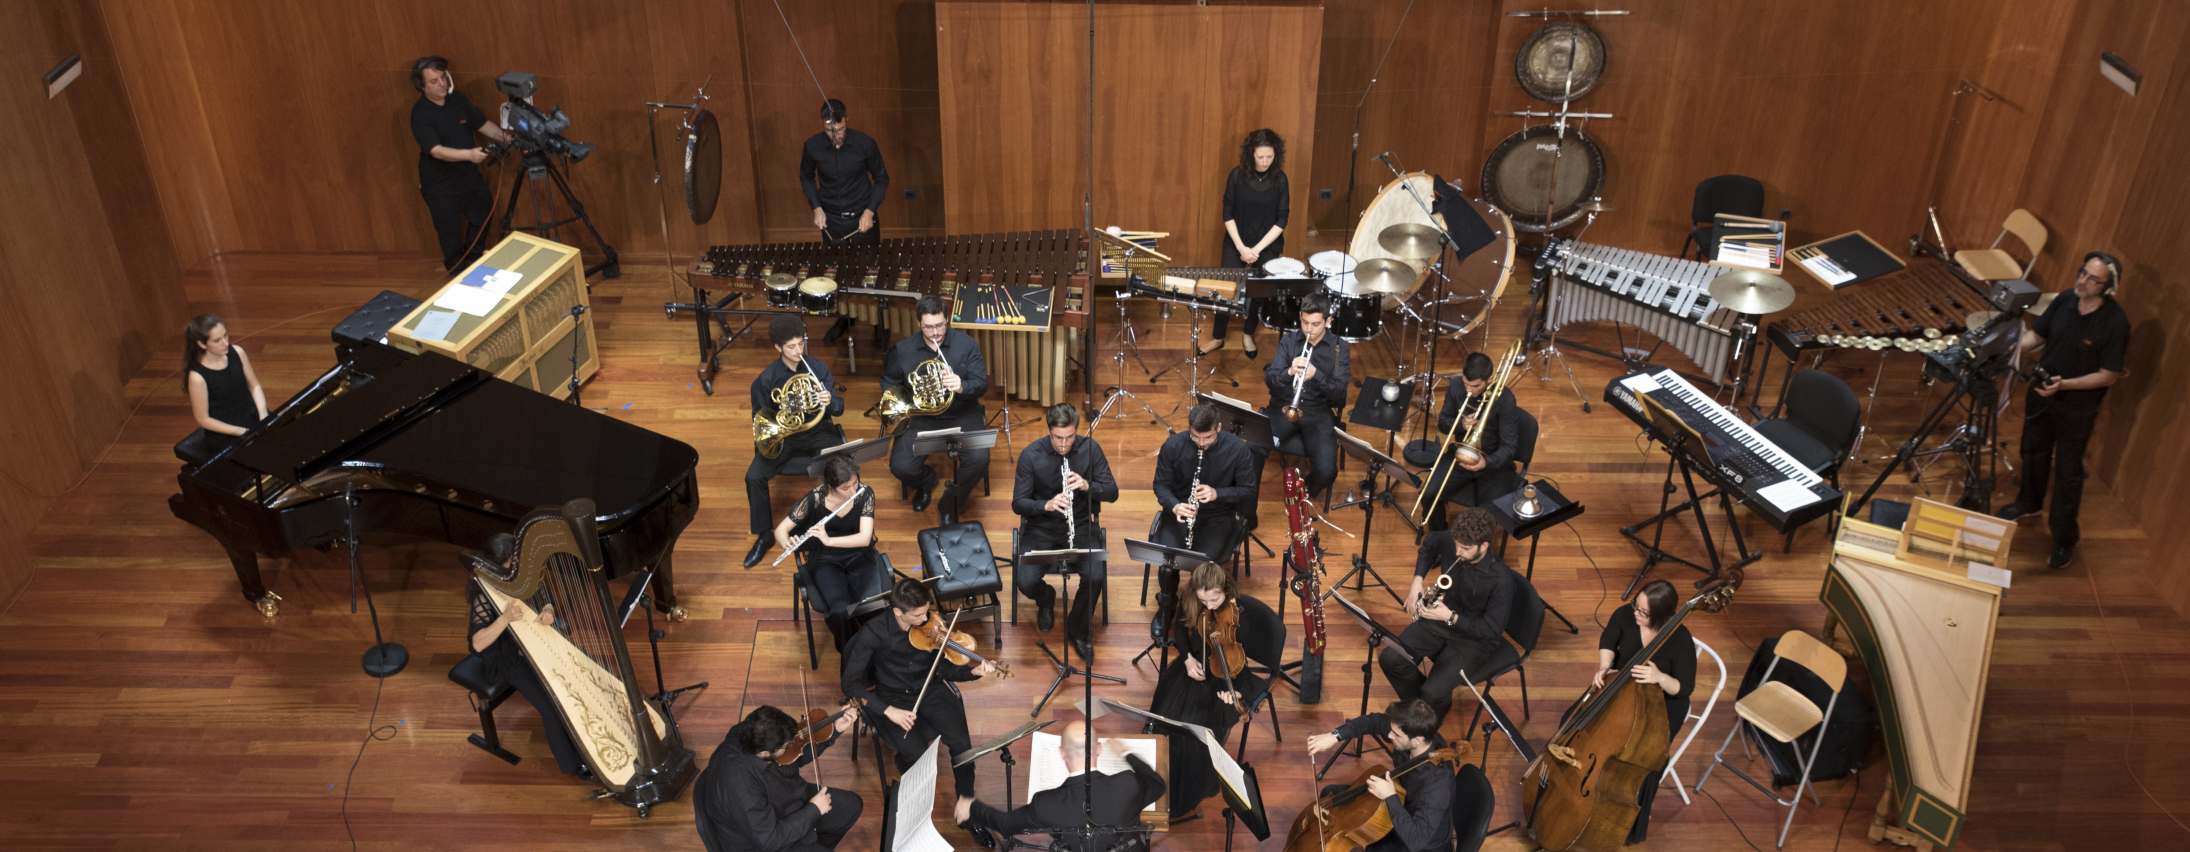 Concierto de la Sinfonietta de la ESMRS en el Museo Reina Sofa (A400) en Madrid